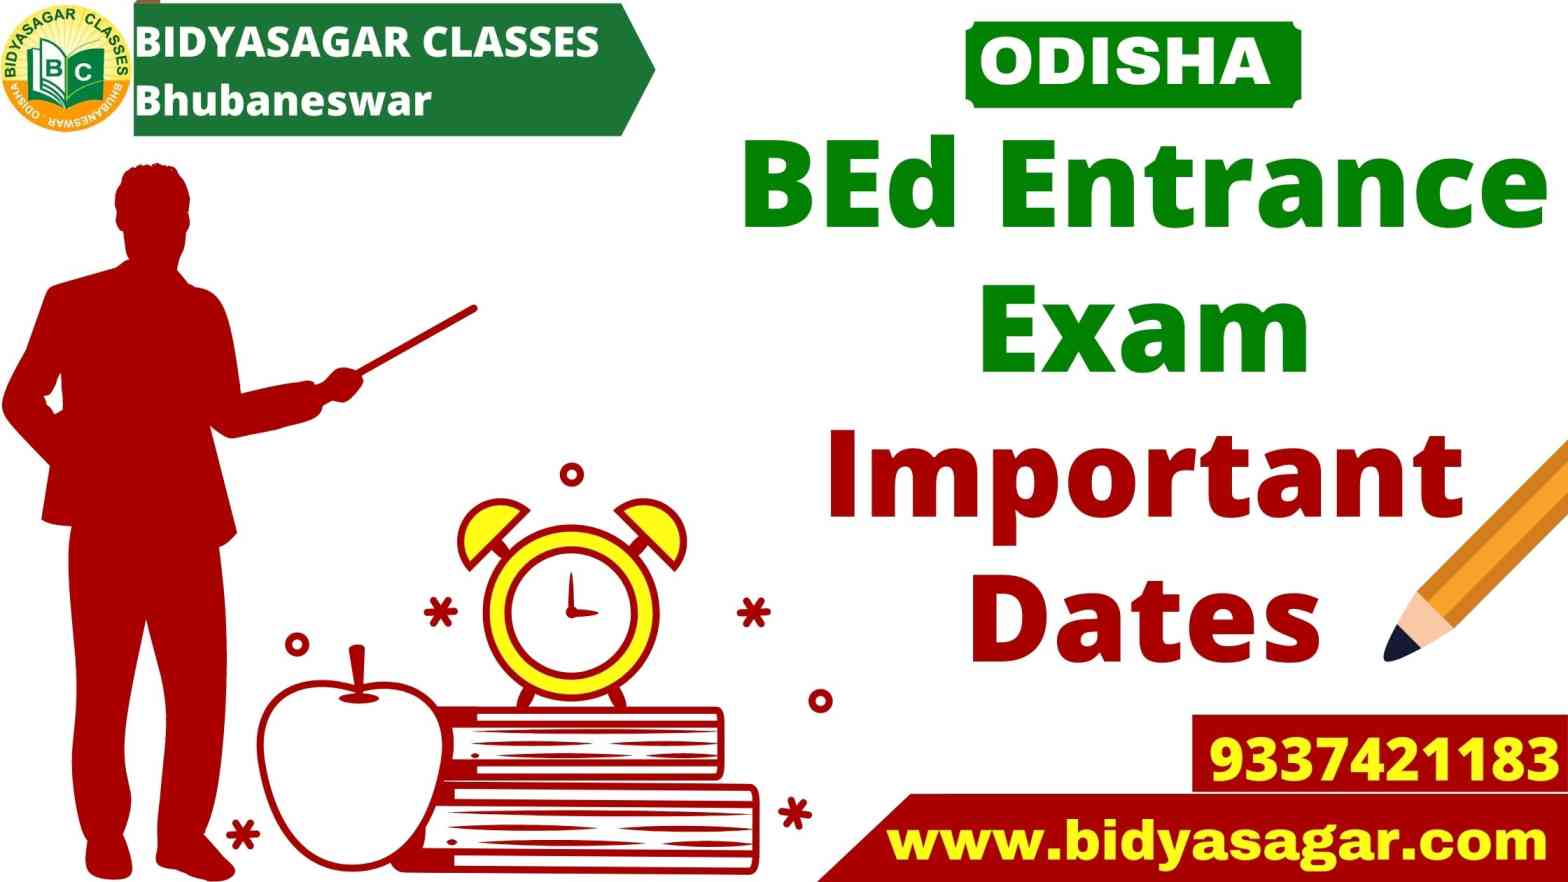 Odisha State B.Ed Entrance Exam 2021 Important Dates